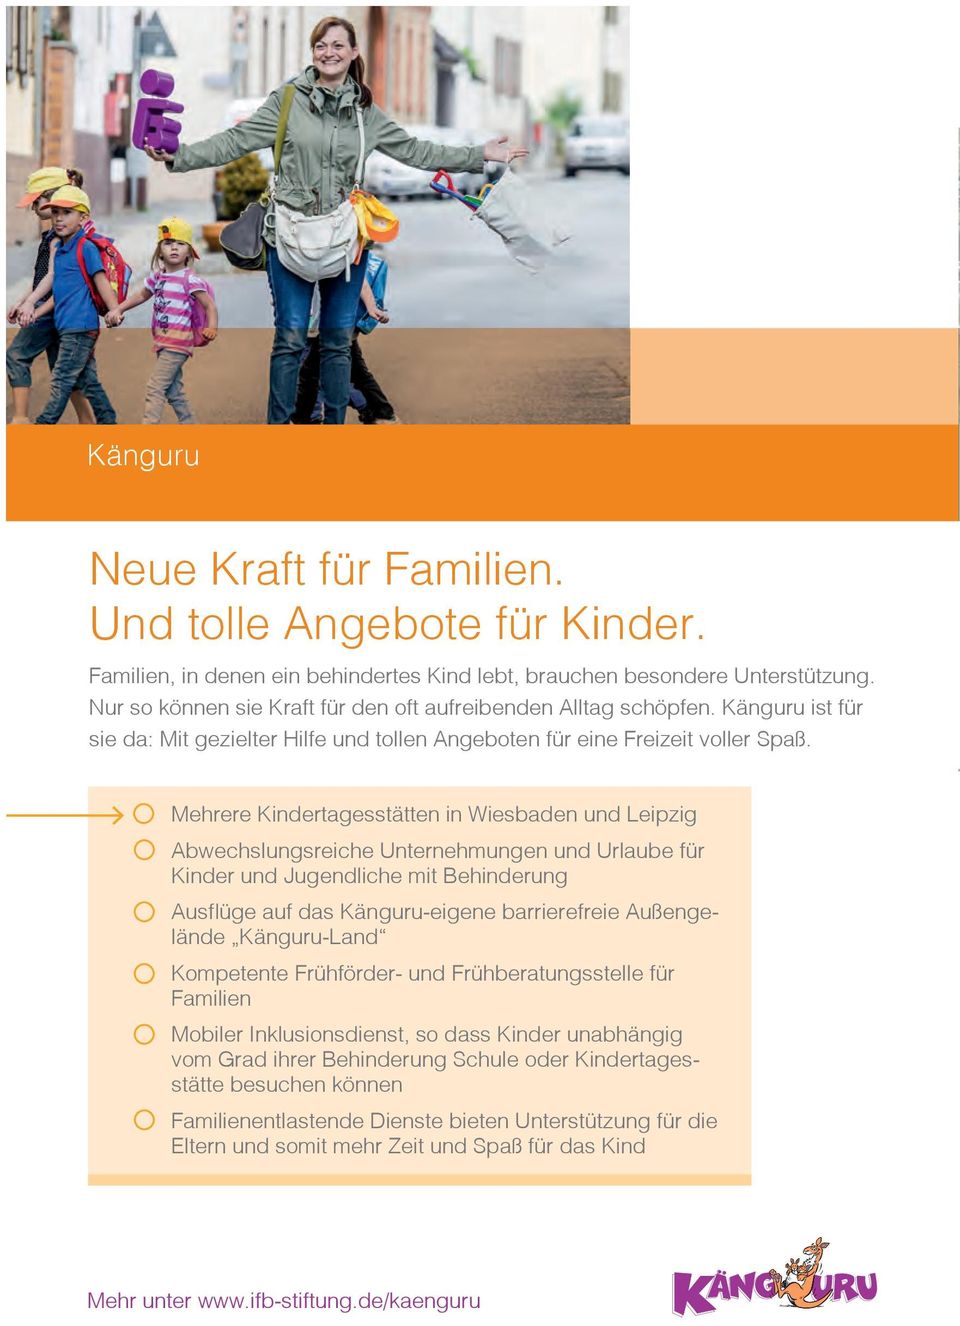 Mehrere Kindertagesstätten in Wiesbaden und Leipzig Abwechslungsreiche Unternehmungen und Urlaube für Kinder und Jugendliche mit Behinderung Ausfl üge auf das Känguru-eigene barrierefreie